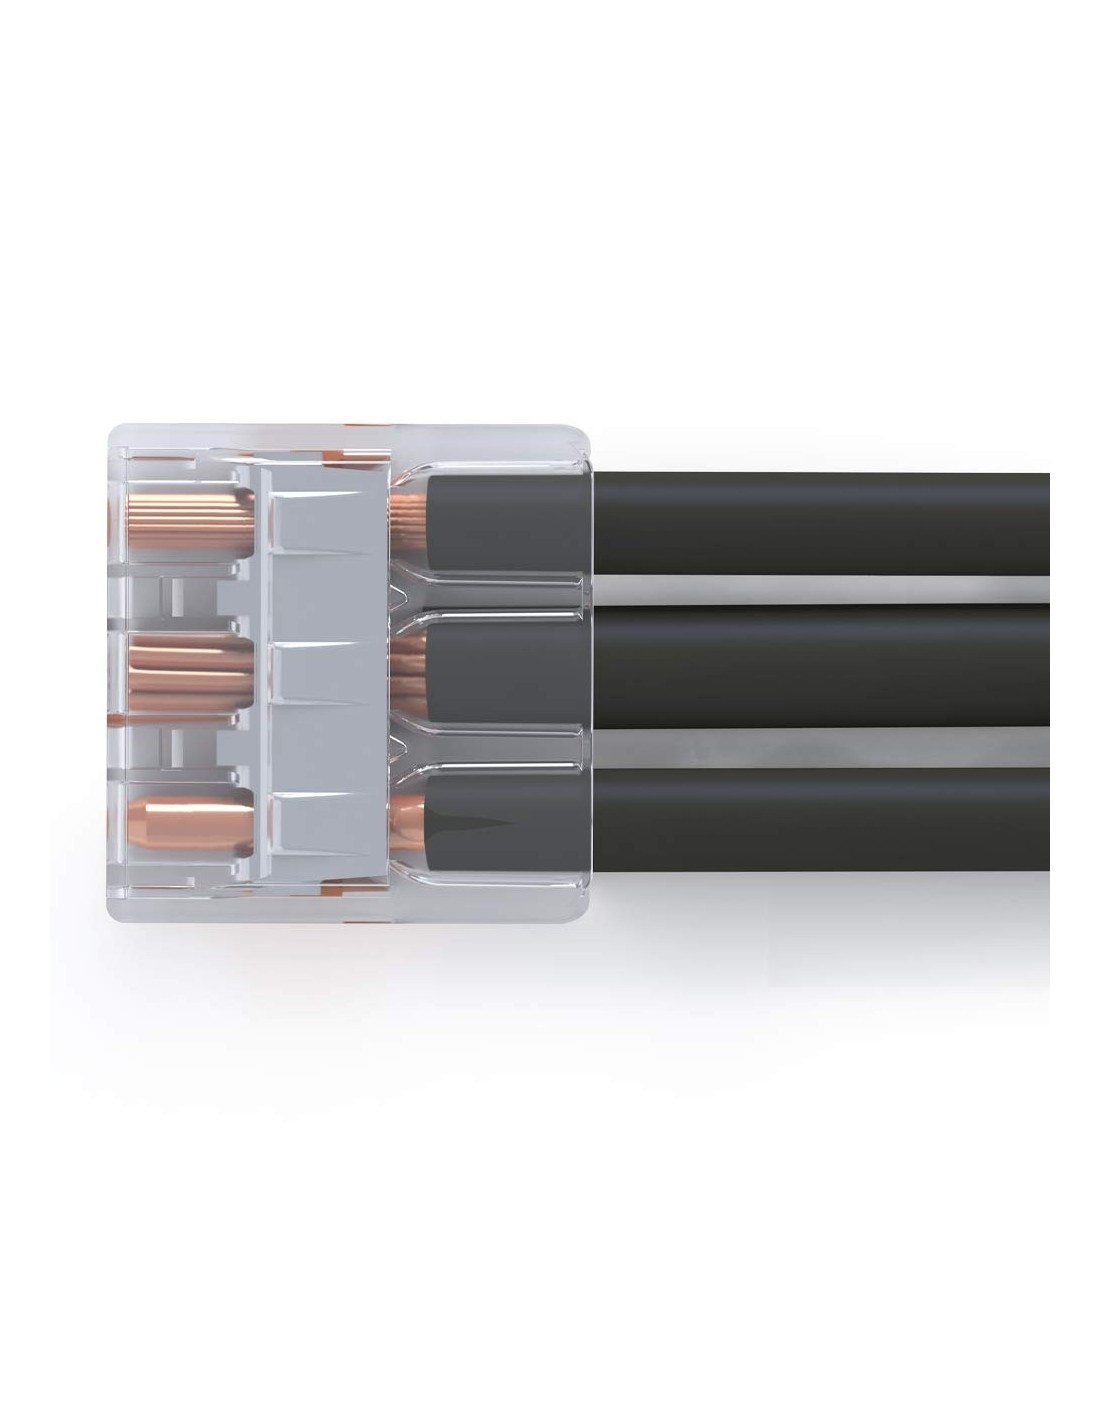 WAGO S221 : 50 mini bornes de connexion rapide 3 entrées pour fils souples  et rigides blindés